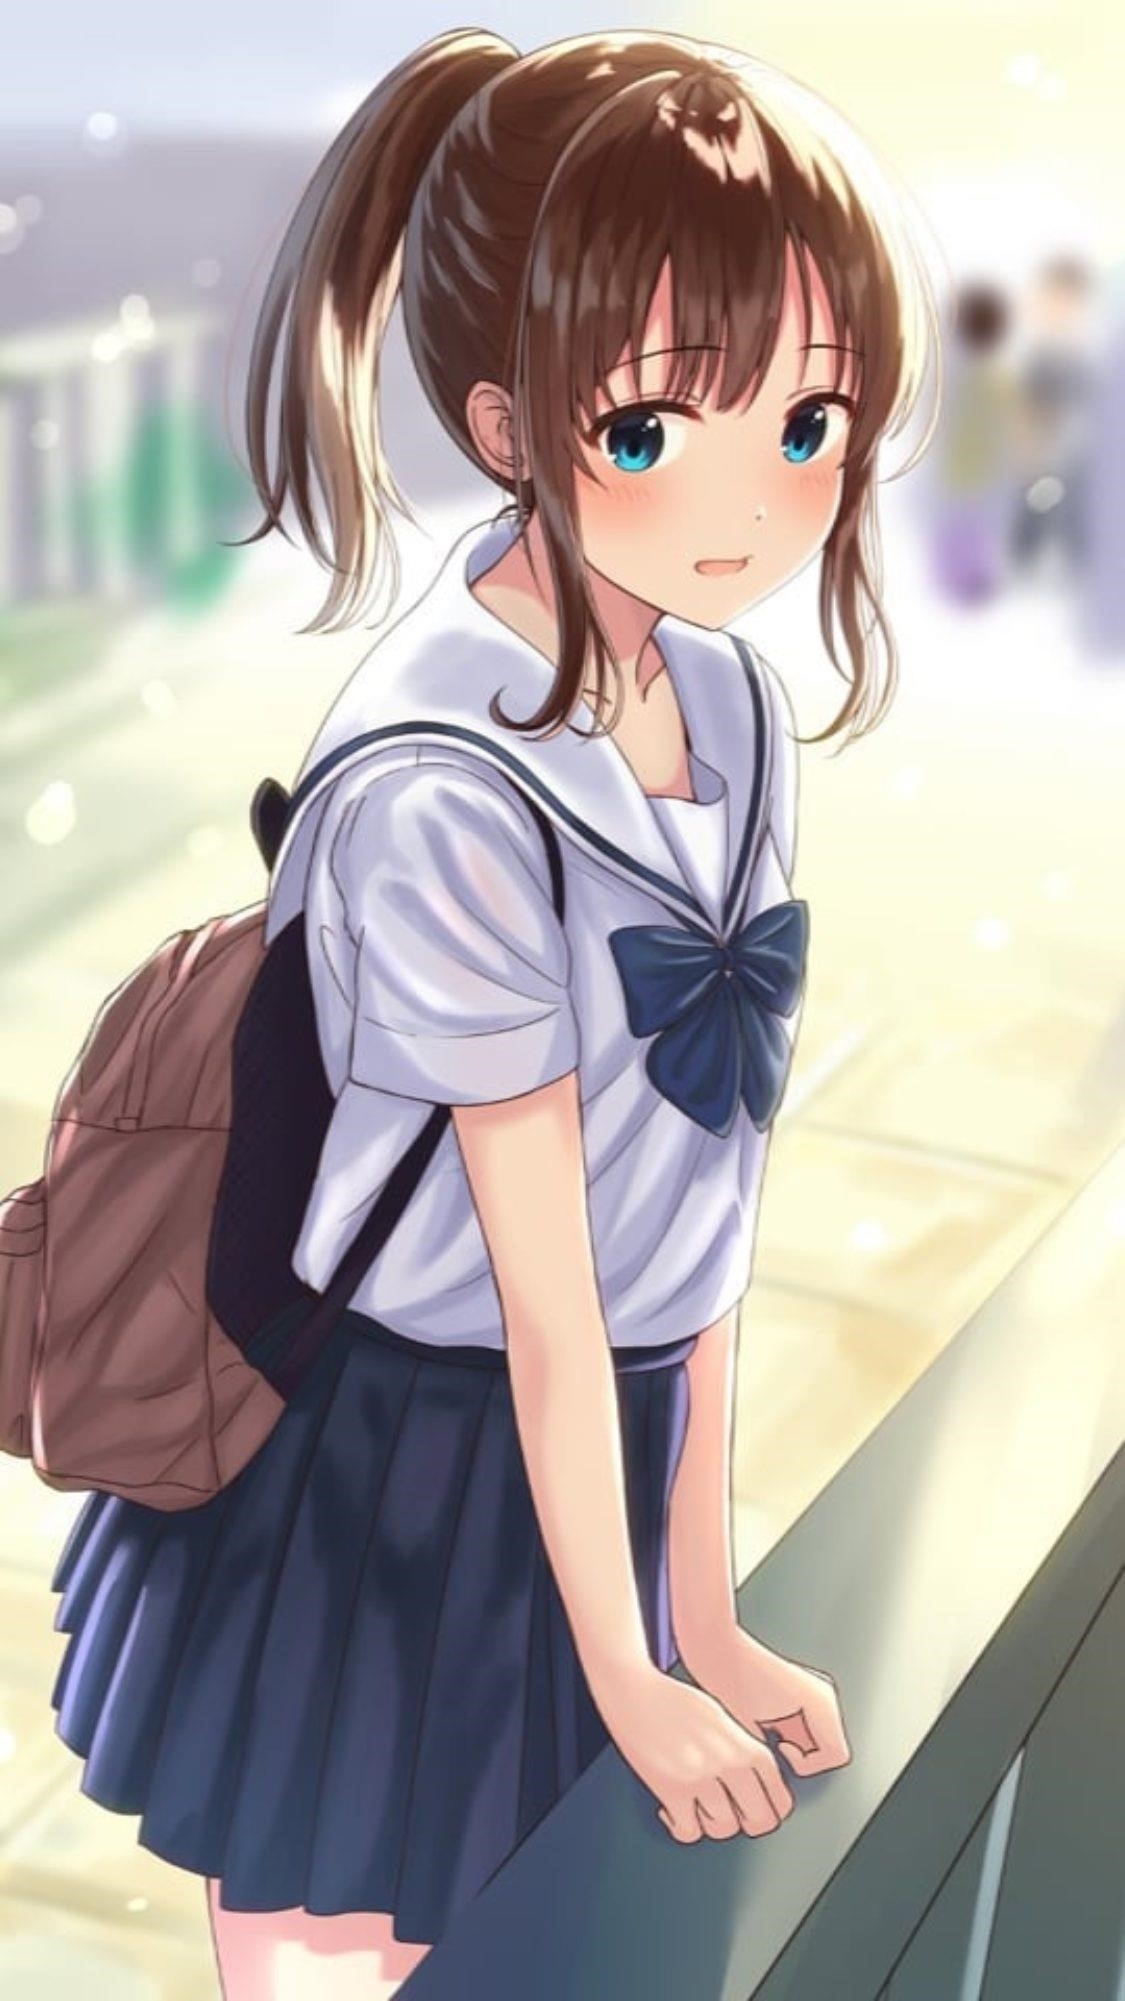 Hình ảnh của nữ nhân vật trong trang phục anime.